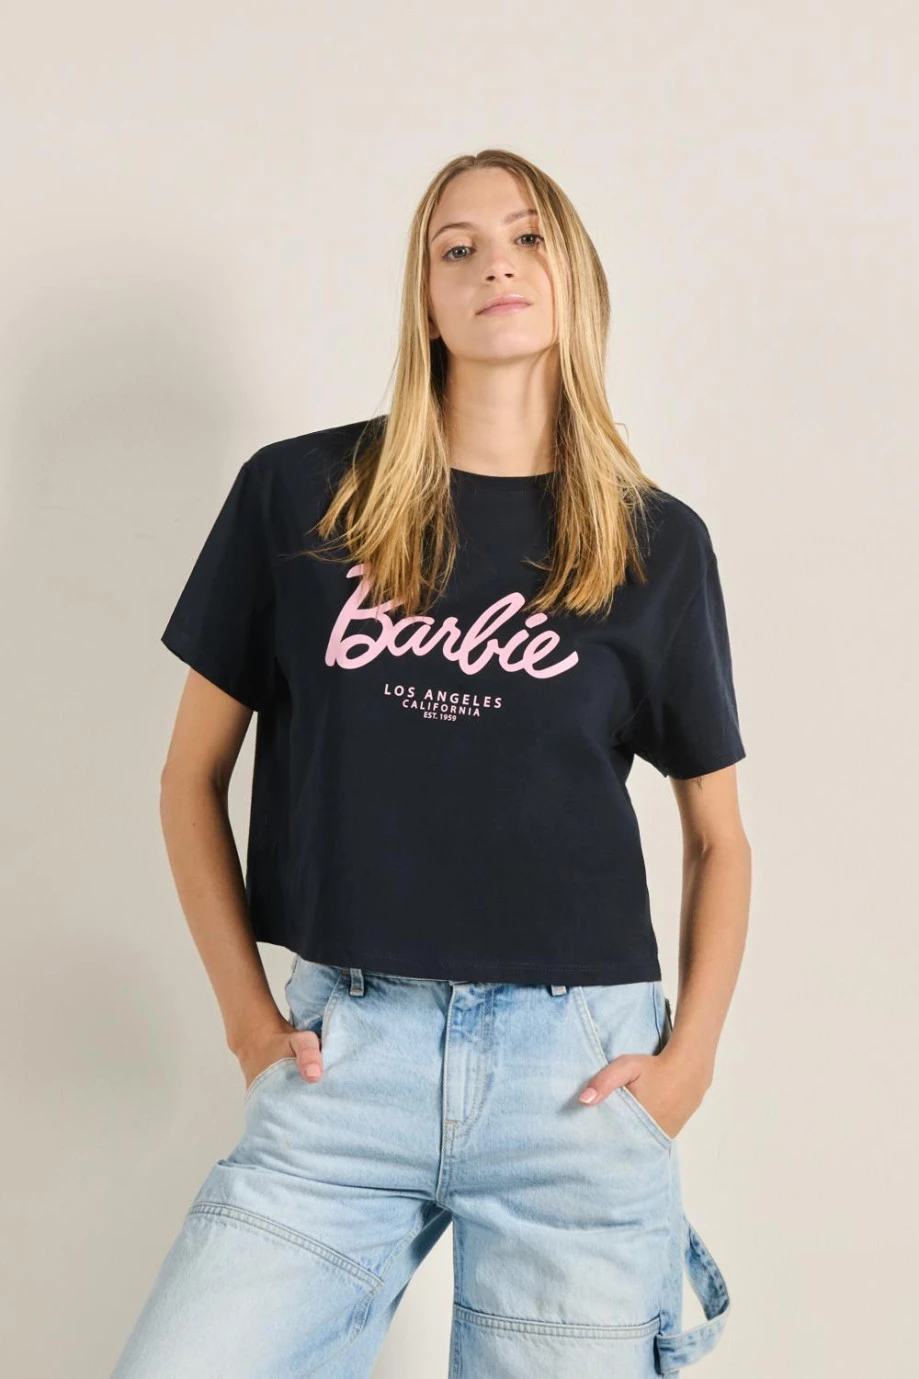 Camiseta unicolor crop top con arte de Barbie y manga corta